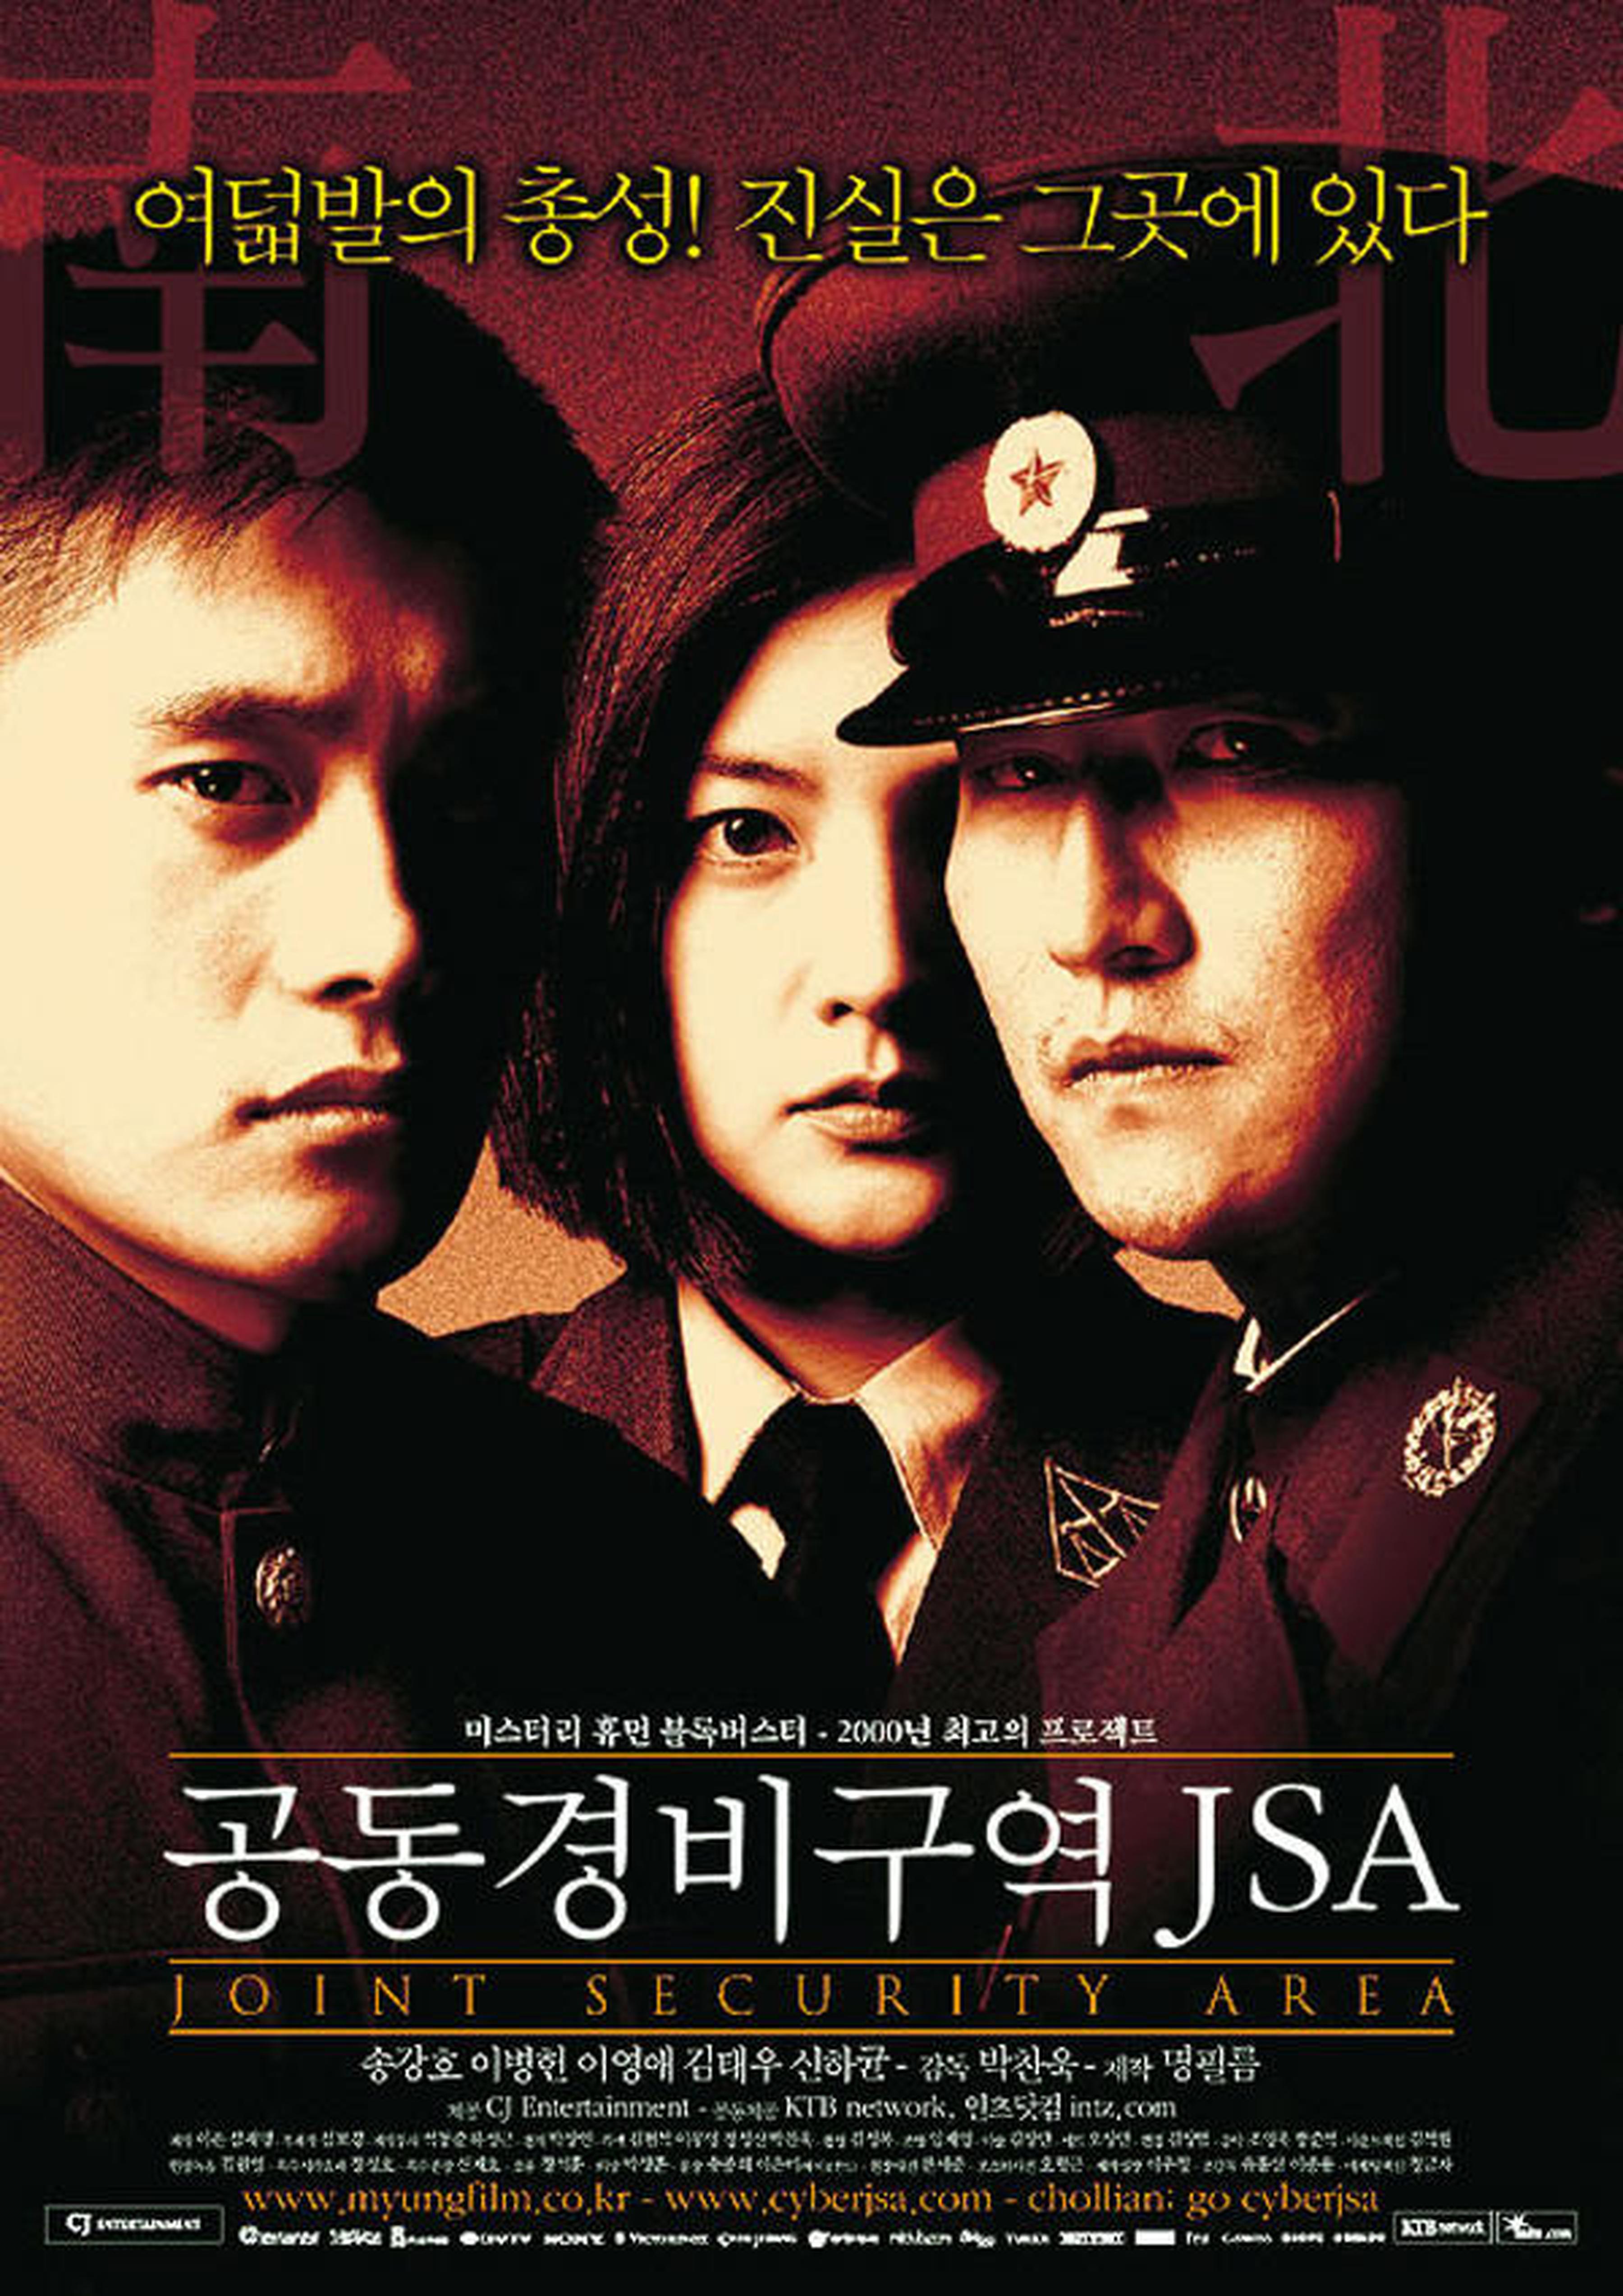 【2000-2010】《共同警备区JSA》 (2000)导演朴赞郁。首部正面表现处于分裂的南北双方士兵之间友谊的影片，对于这两个一直处于敌对状态的国家来说无疑是个巨大的突破。韩国年度票房冠军，入围第51届柏林电影节金熊奖。